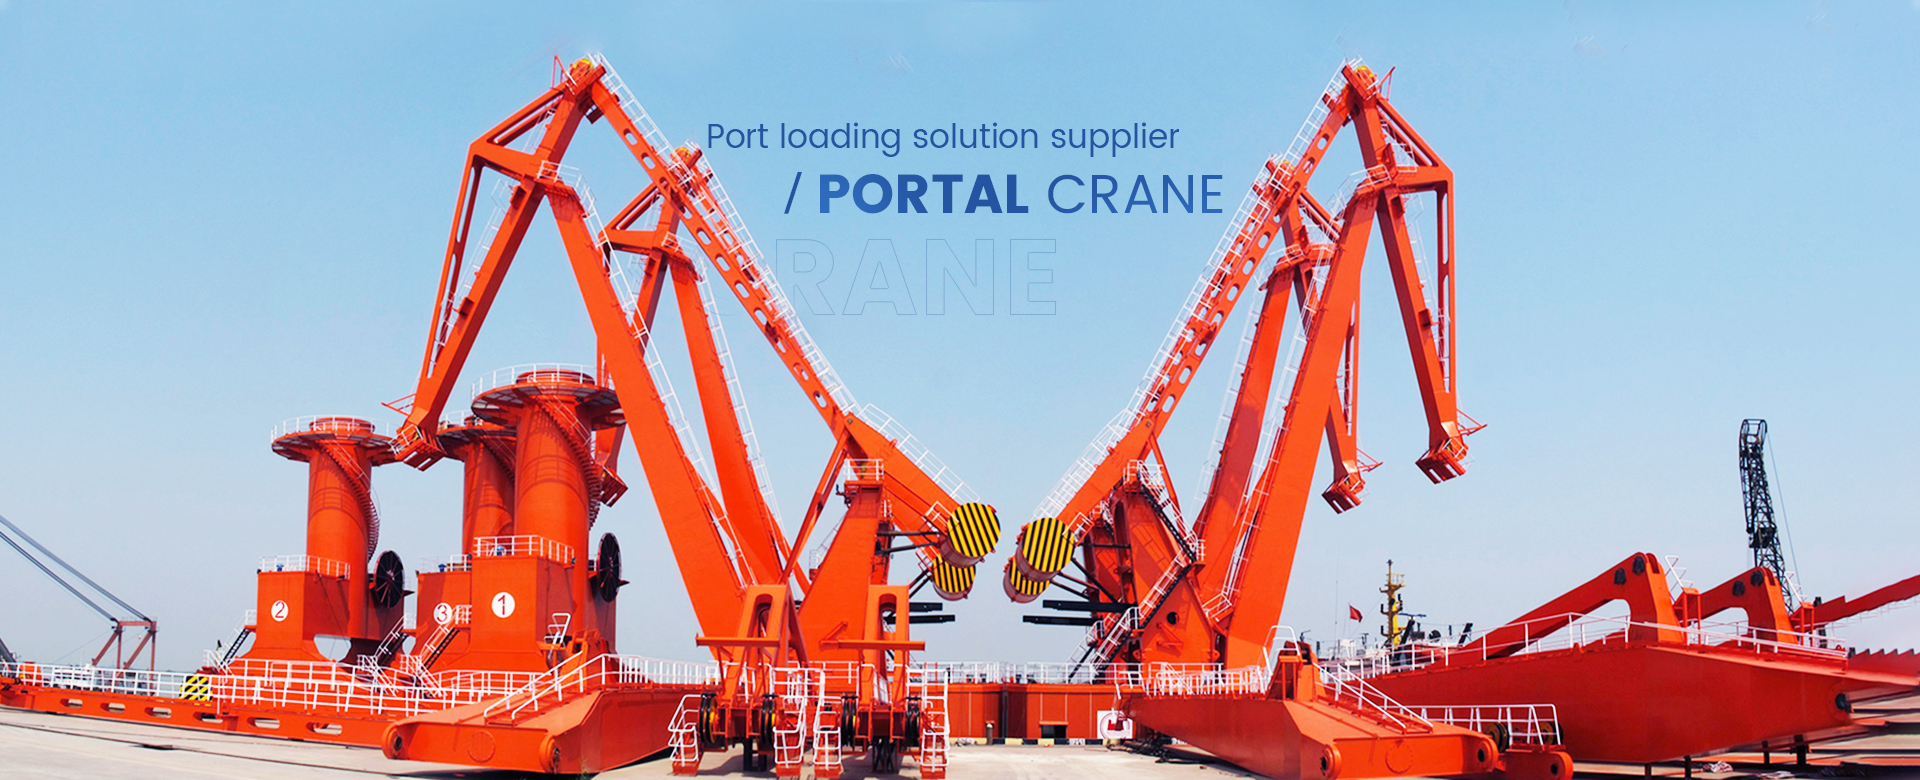 I-Portal Crane